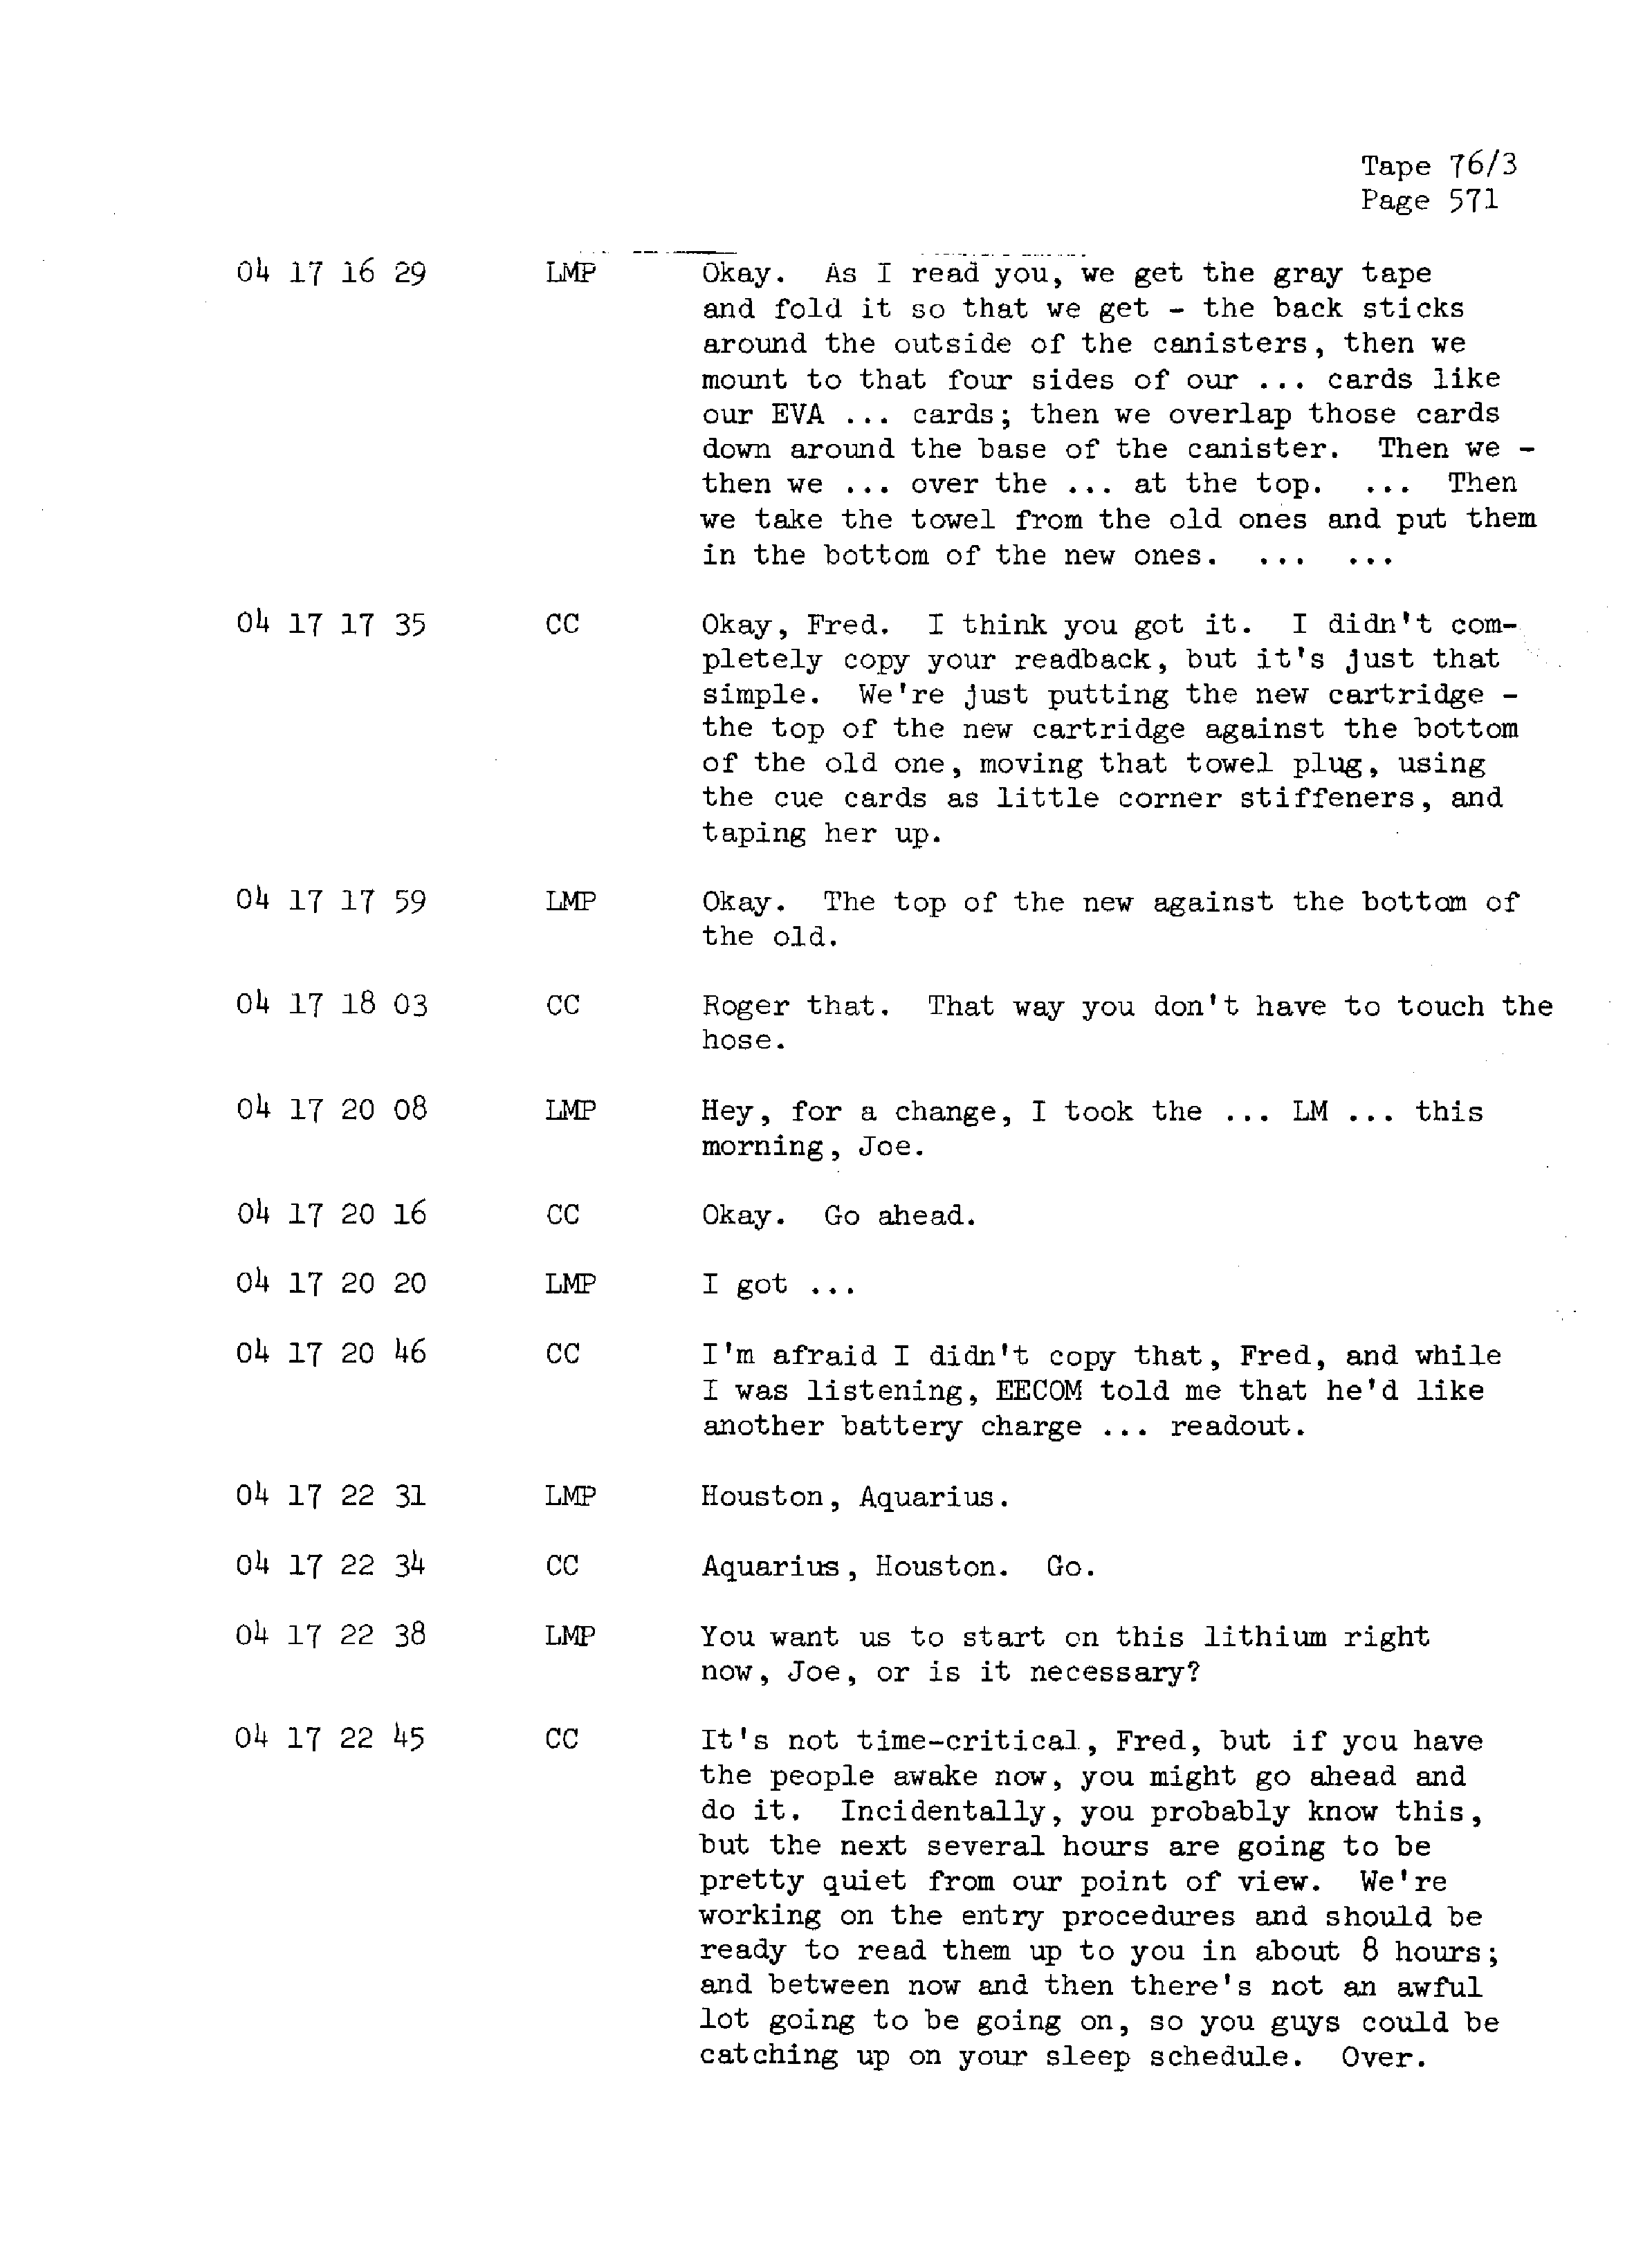 Page 578 of Apollo 13’s original transcript